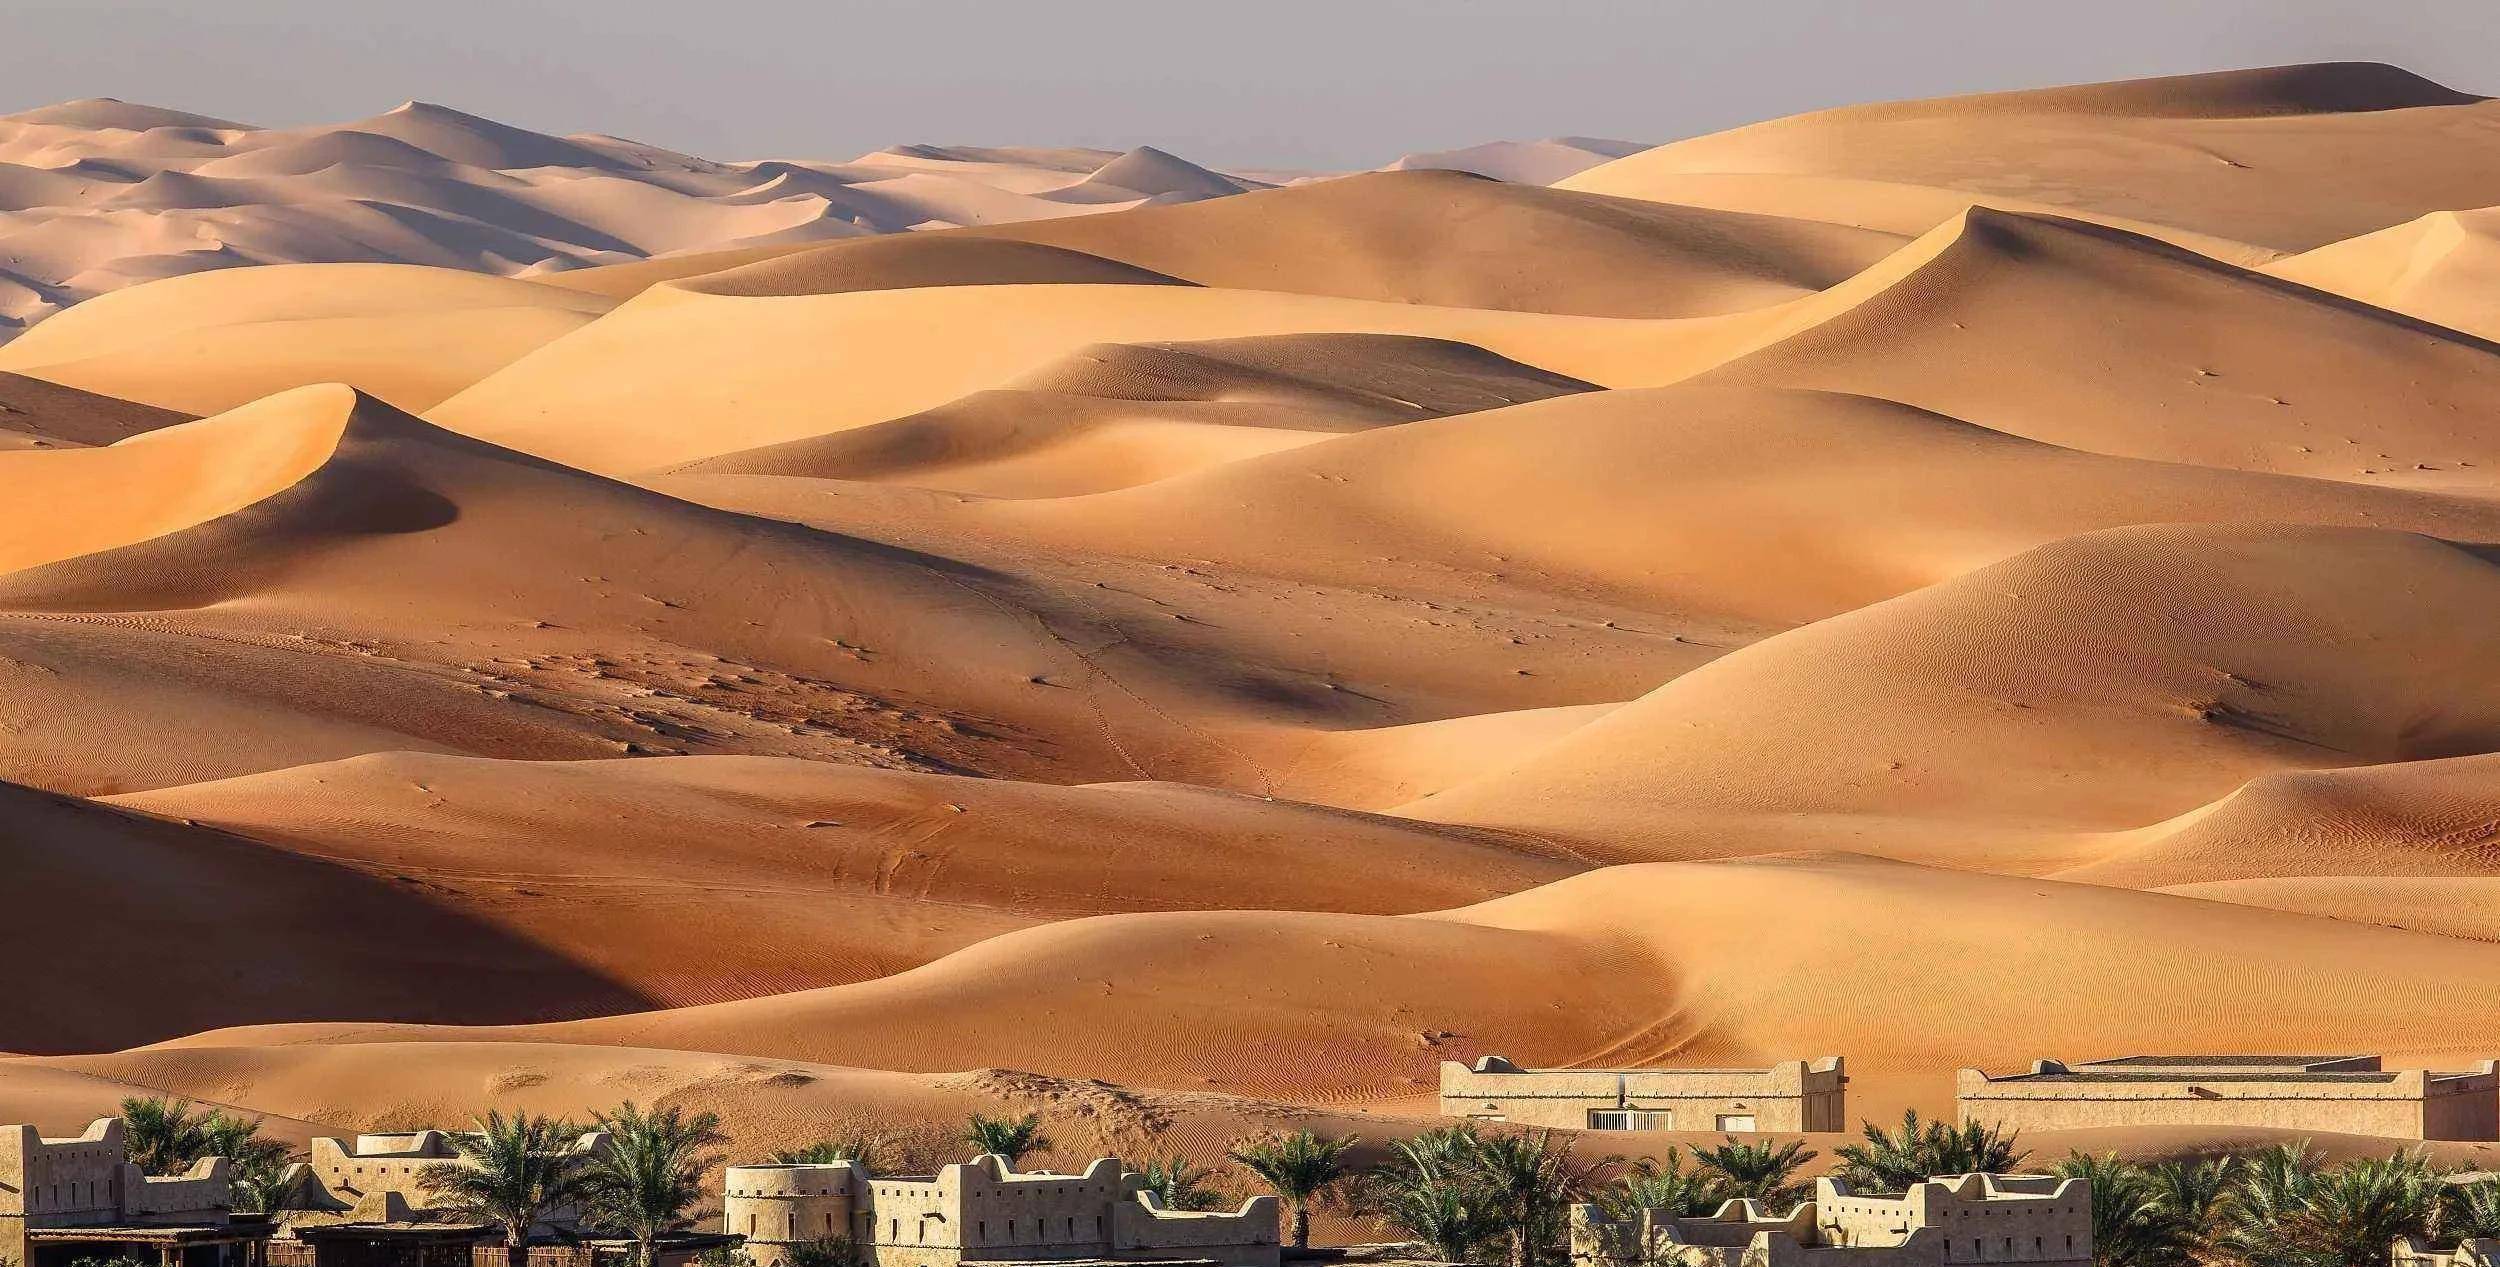 除西部高原属地外,沙特境内其他地区均为亚热带沙漠气候,天气长年炎热